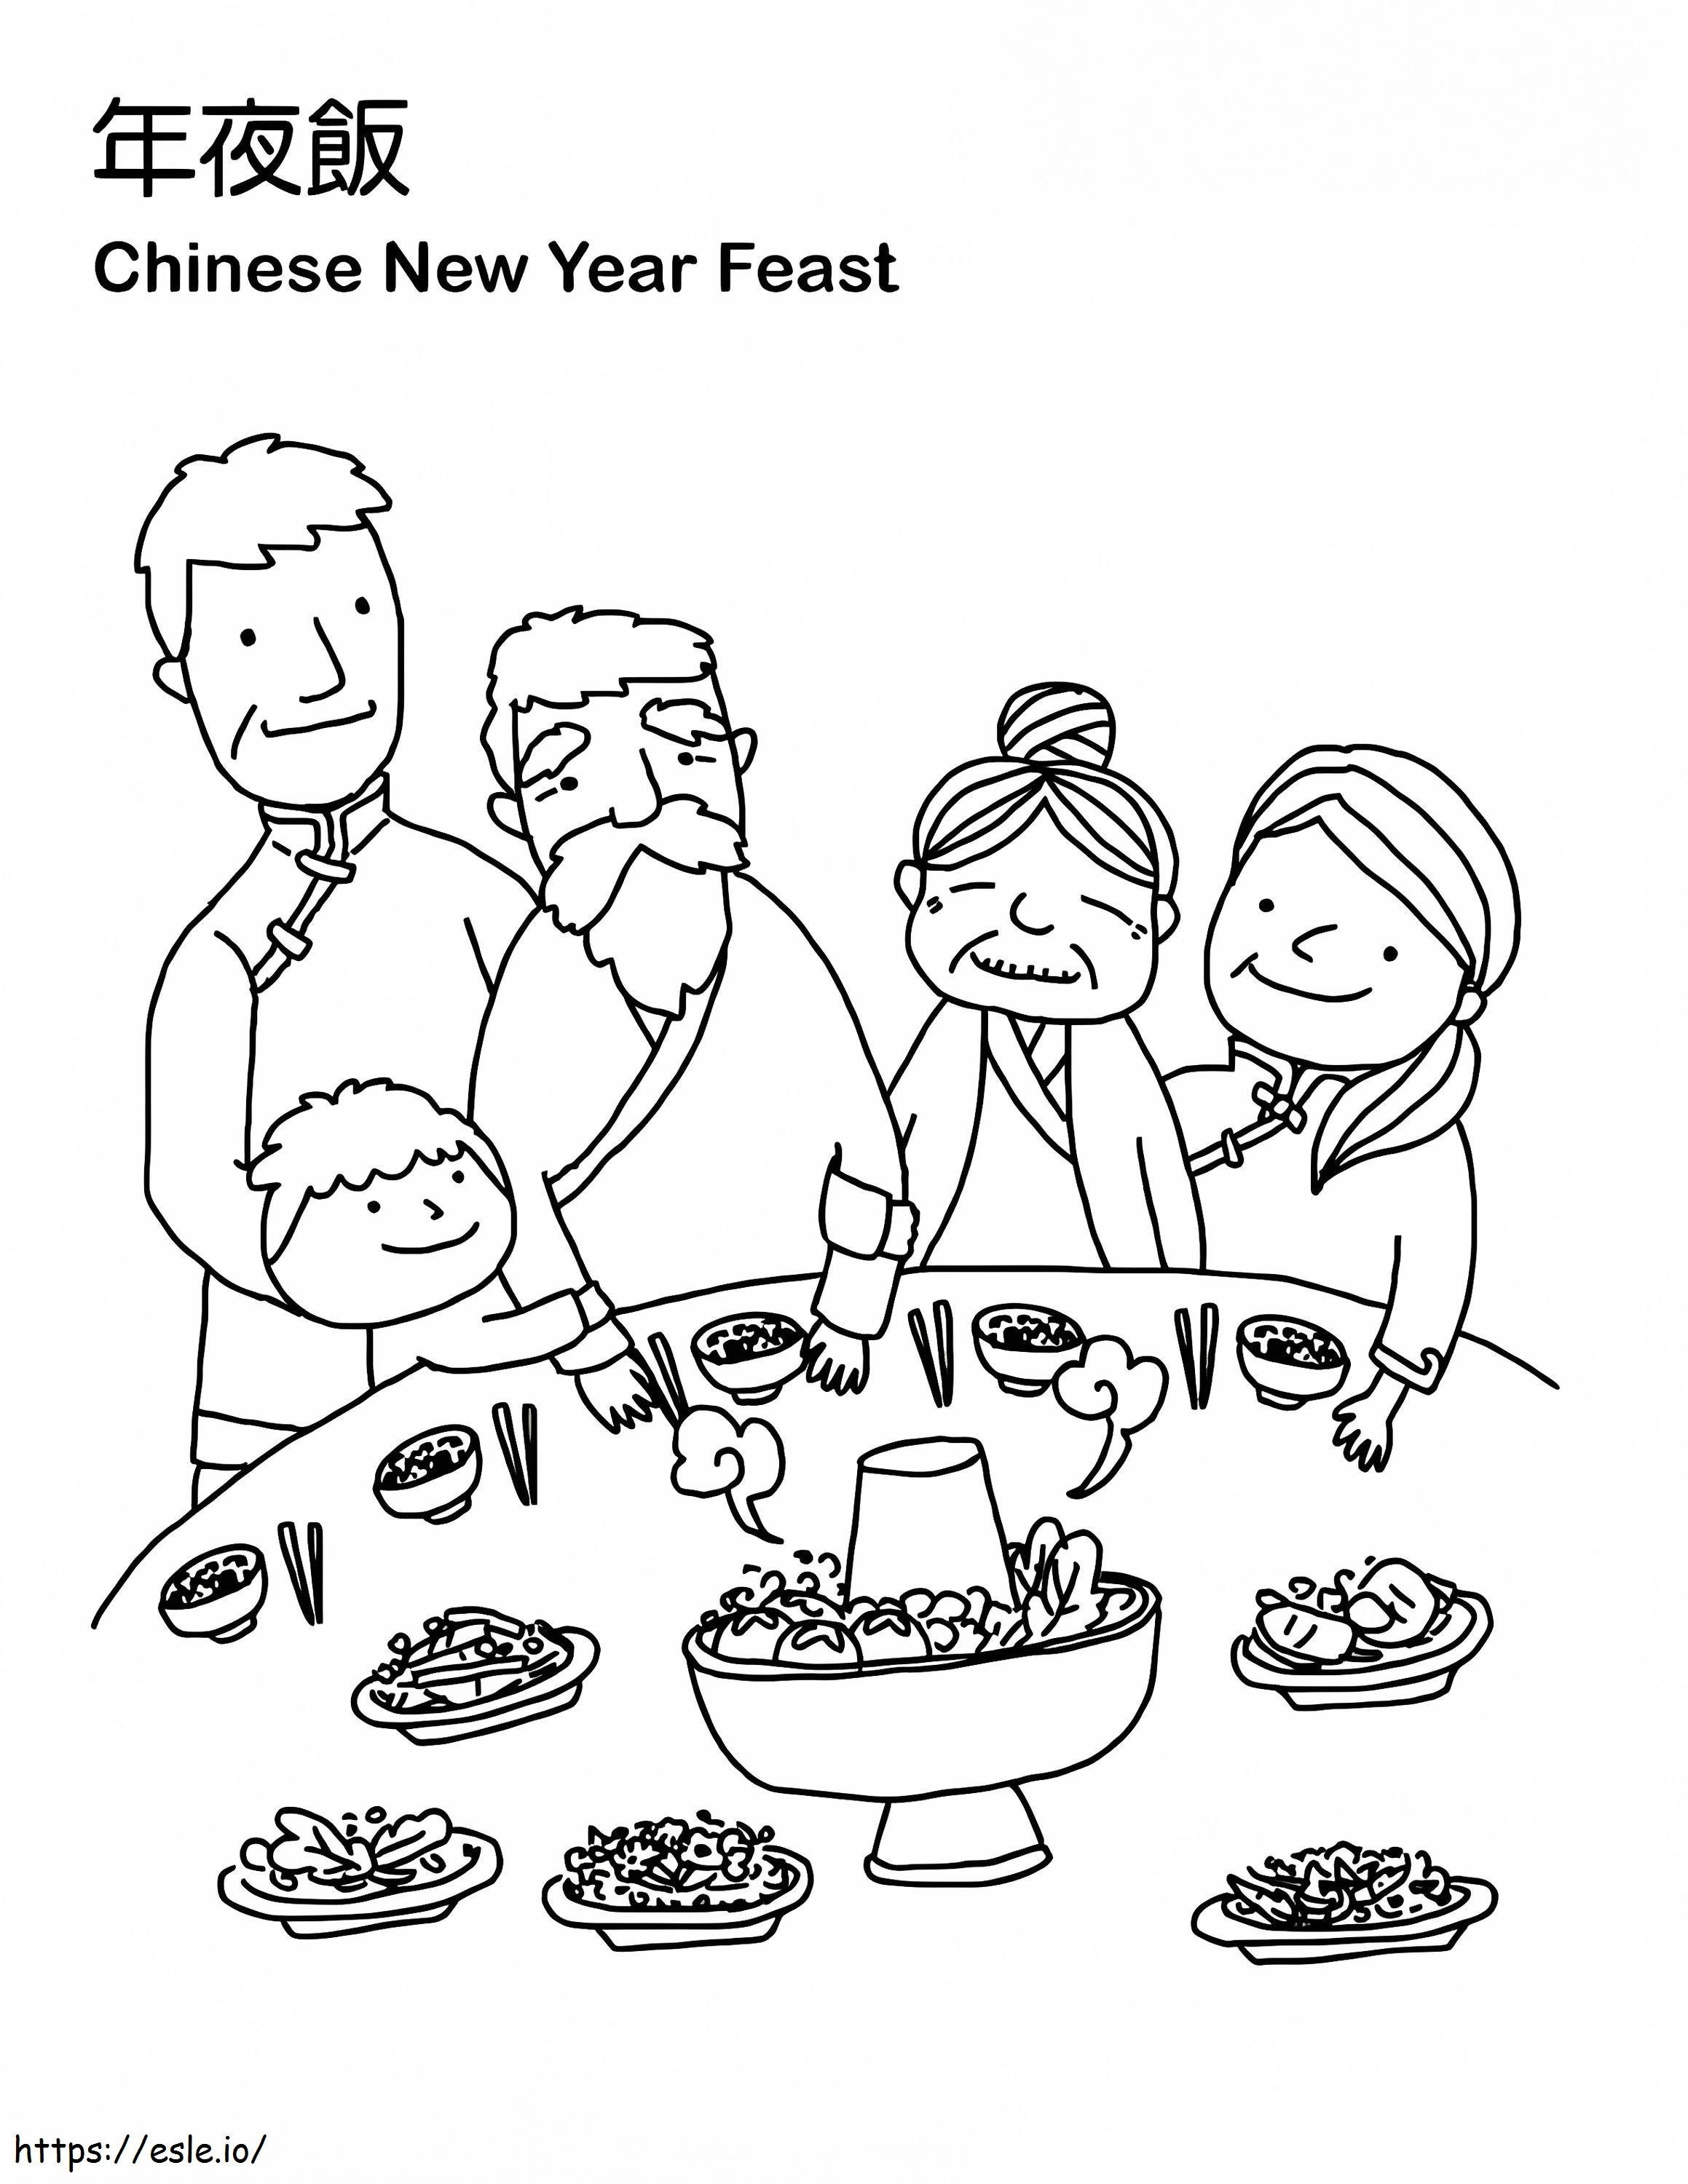 Chinesisches Neujahrsfest ausmalbilder